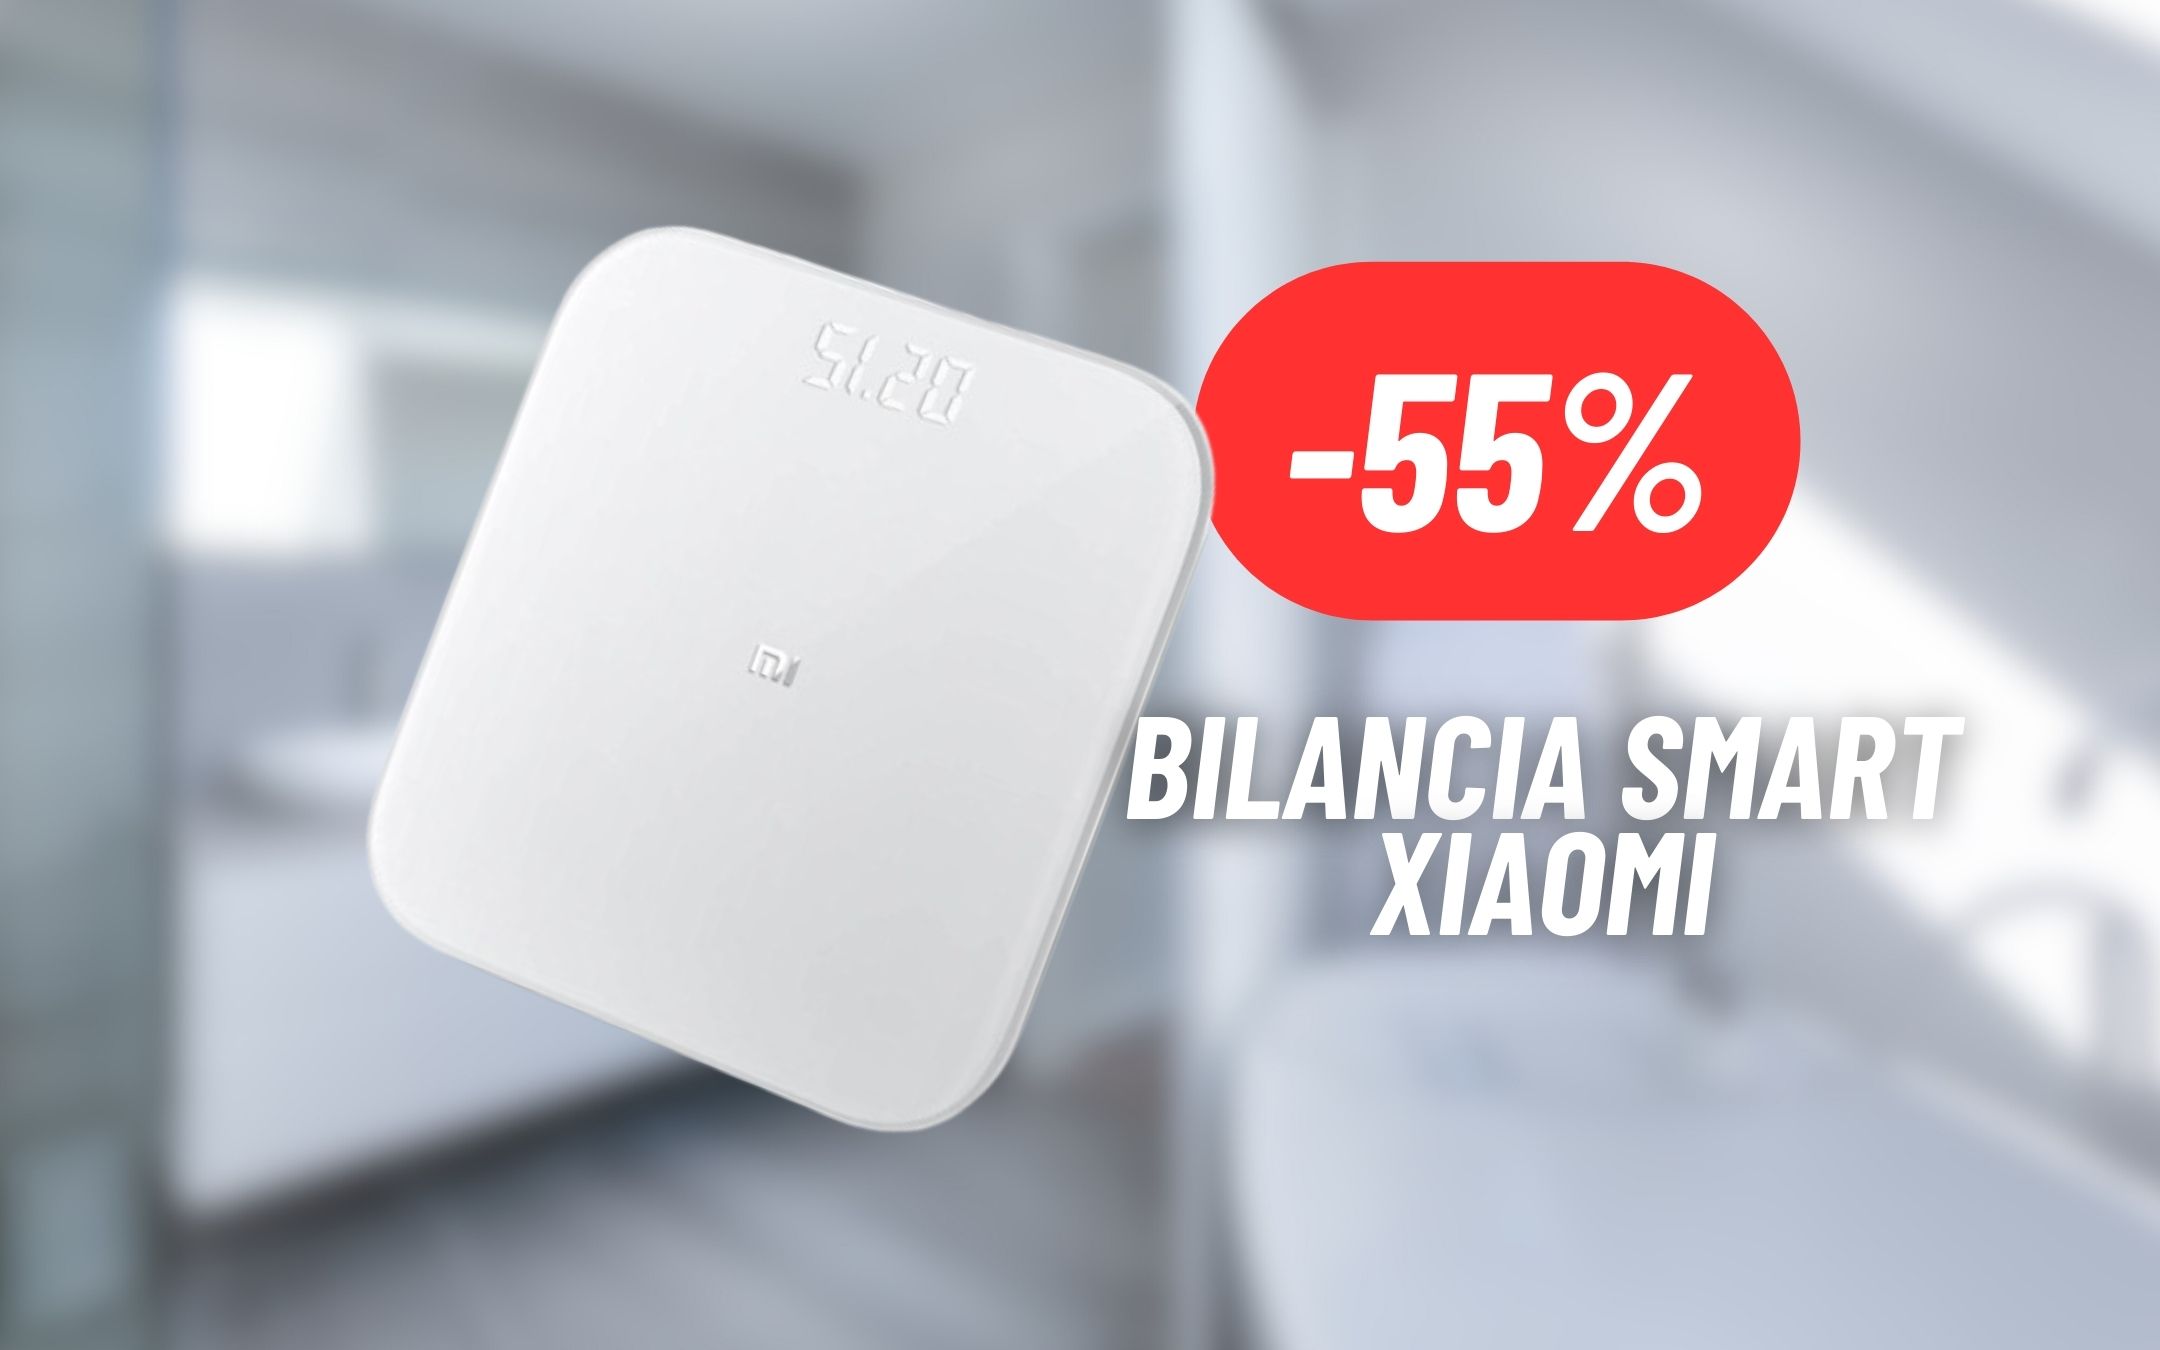 Black Friday: la bilancia smart di Xiaomi costa la metà, bilancia xiaomi